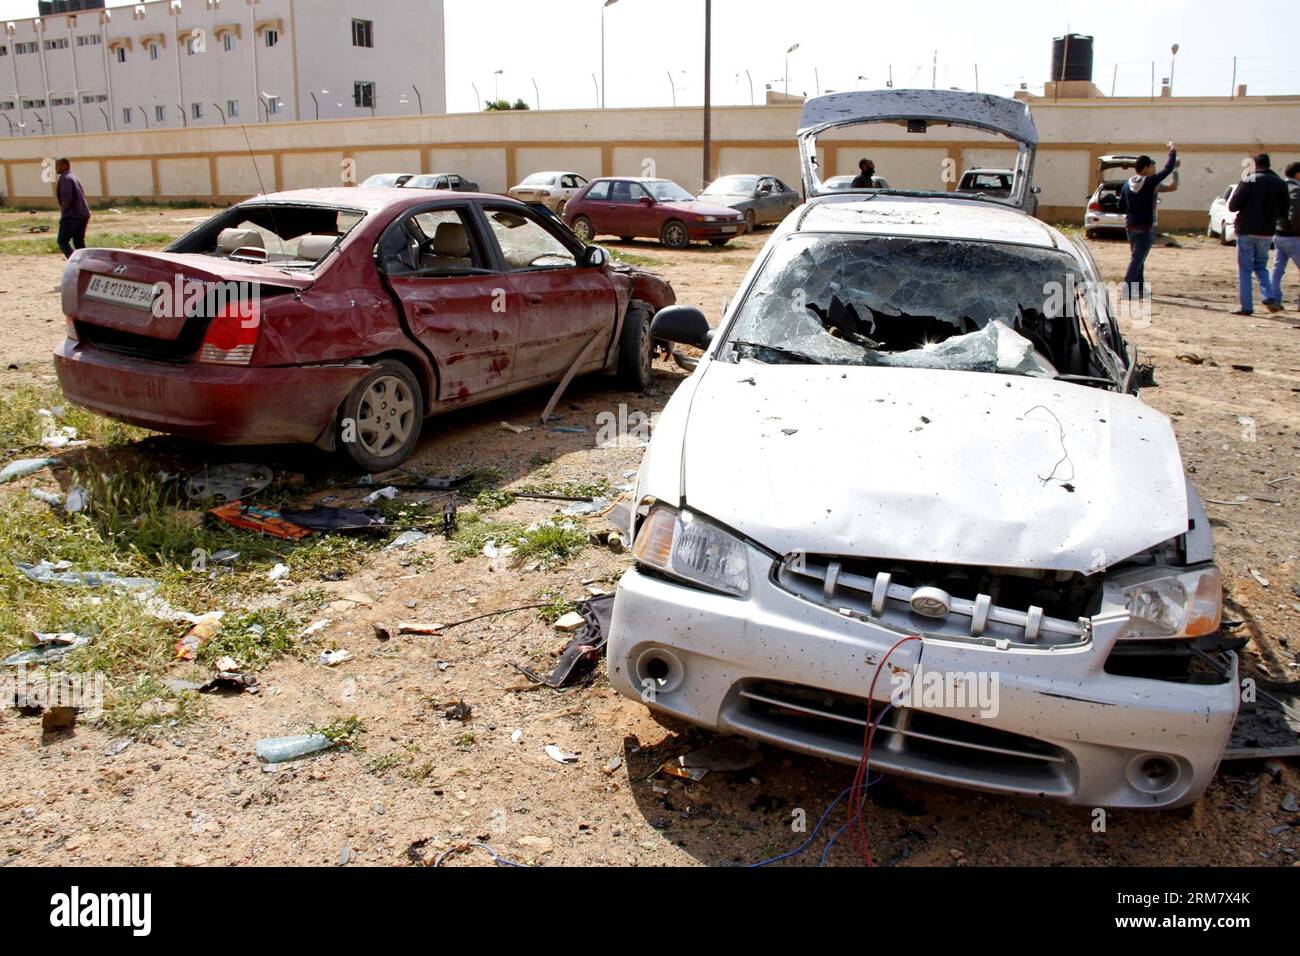 (140317) -- BENGHAZI, 17 mars 2014 (Xinhua) -- des gens vérifient les voitures endommagées à Benghazi, Libye, 17 mars 2014. Une voiture piégée ciblant un camp militaire libyen à Benghazi a tué au moins cinq soldats et blessé dix autres lundi, ont déclaré des sources militaires et médicales à Xinhua. (Xinhua/Mohammed Elshaiky) LIBYA-BENGHAZI-MILITARY-CAMP-BOMB-ATTACK PUBLICATIONxNOTxINxCHN Benghazi Mars 17 2014 célébrités XINHUA vérifier les voitures endommagées à Benghazi Libye Mars 17 2014 une voiture piégée visant un camp militaire libyen à Benghazi A TUÉ au moins cinq soldats et blessé dix autres lundi militaire et médical S. Banque D'Images